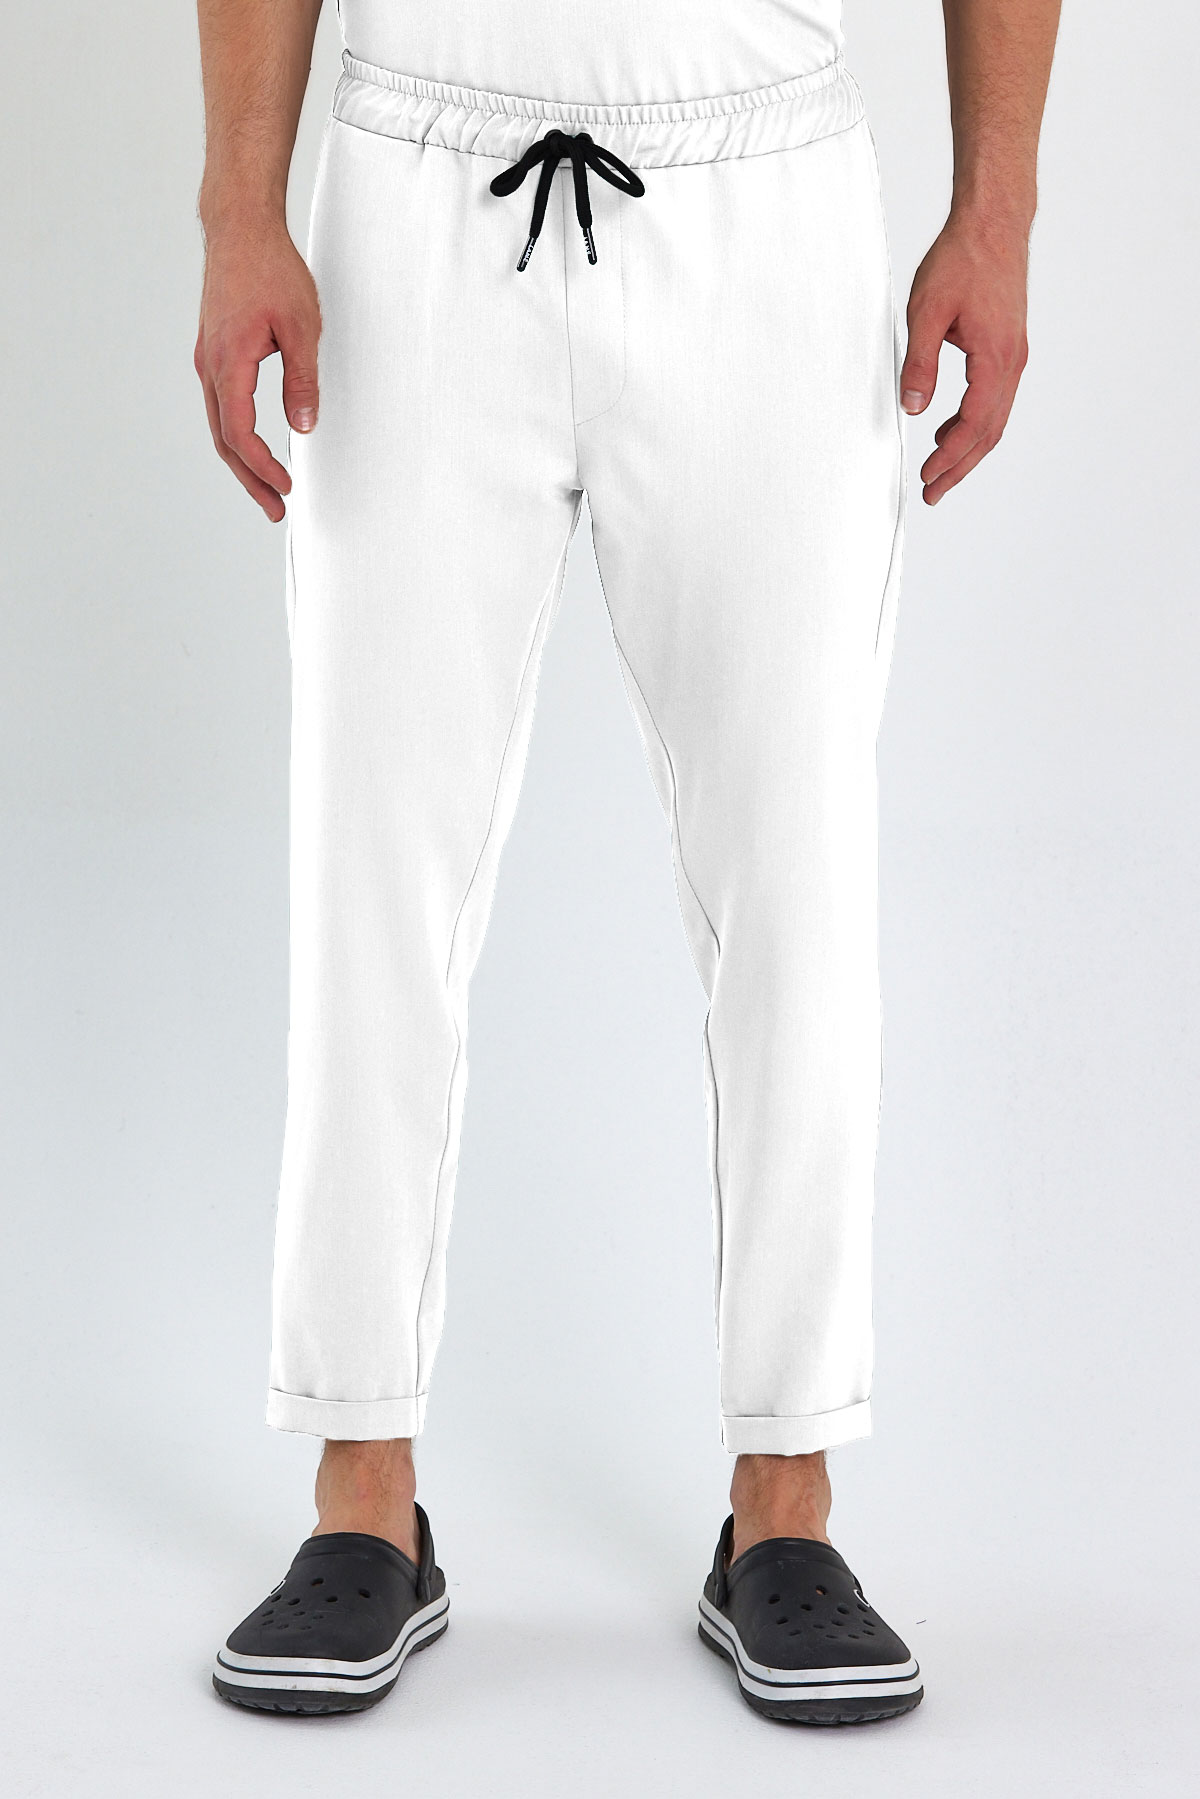 LAME 2004 Premium Likralı Beyaz Scrubs, Hemşire Forması Jogger Pantolon